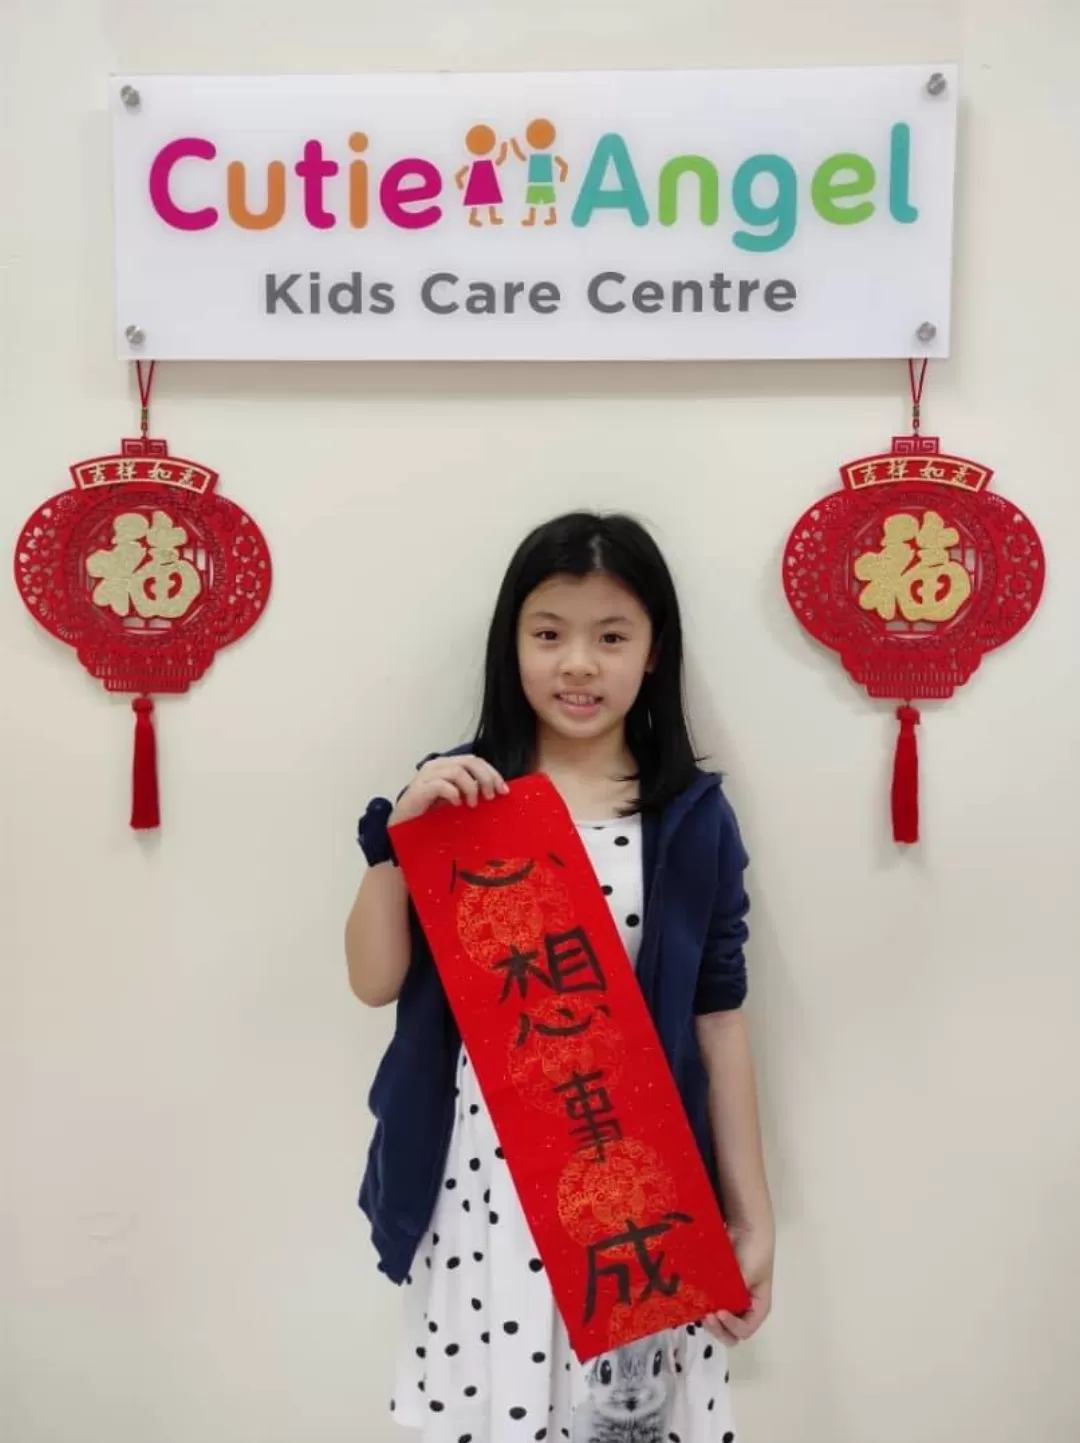 Cutie Angel Kids Care Centre